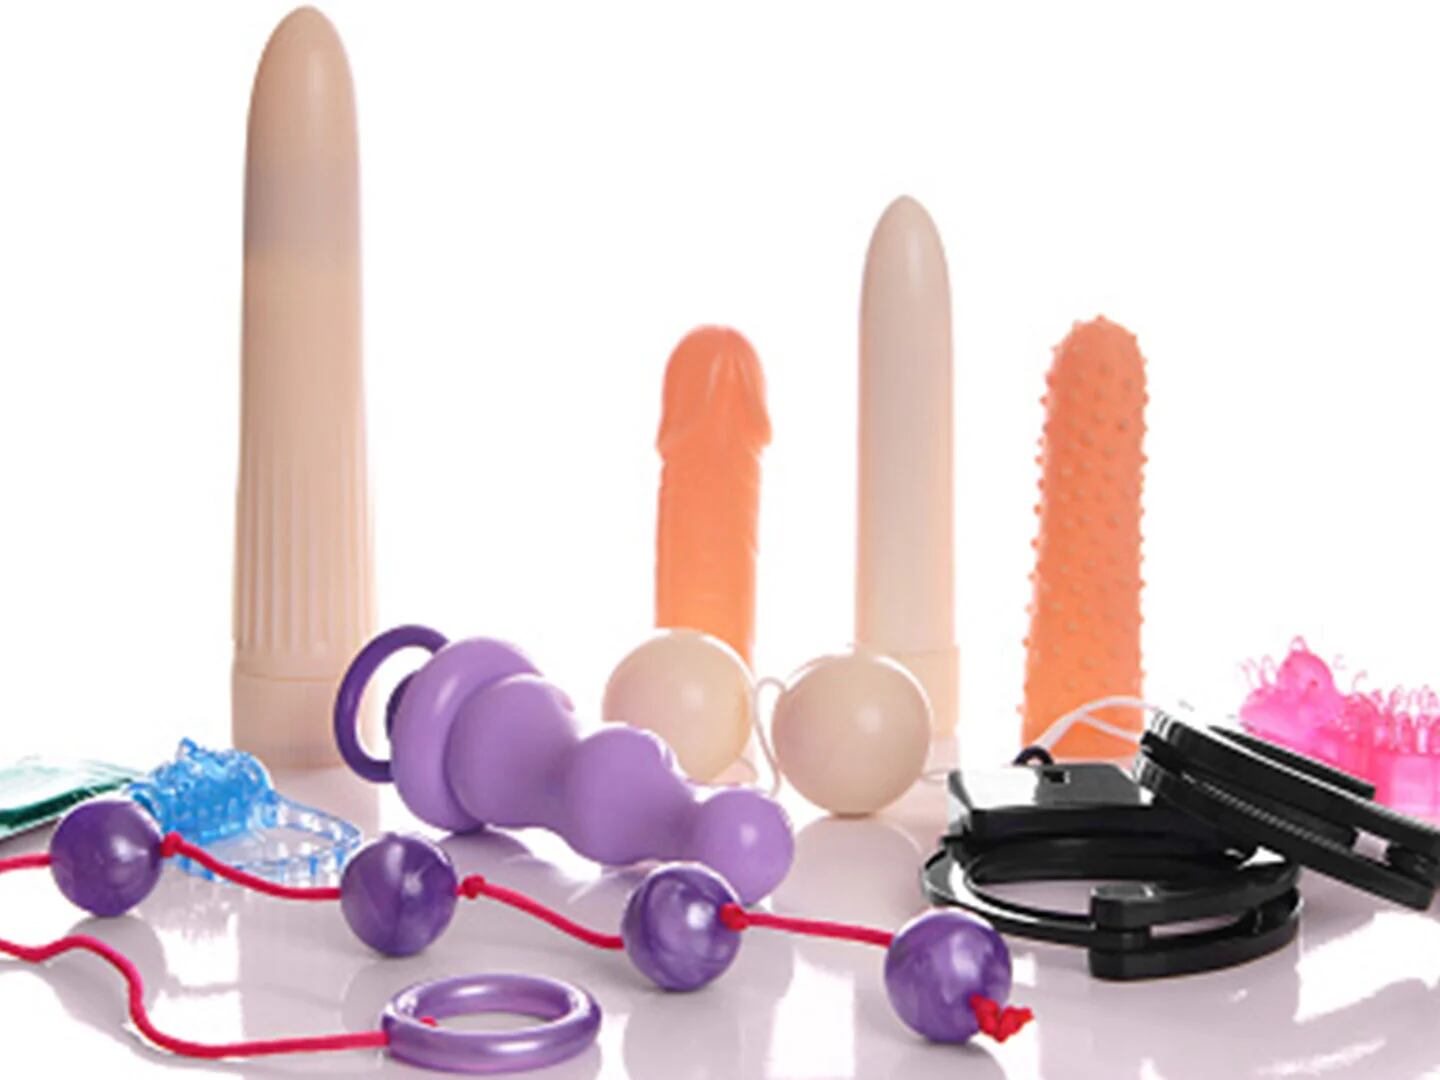 Cuáles son los juguetes sexuales que más compran en Colombia? - Gente -  Cultura 